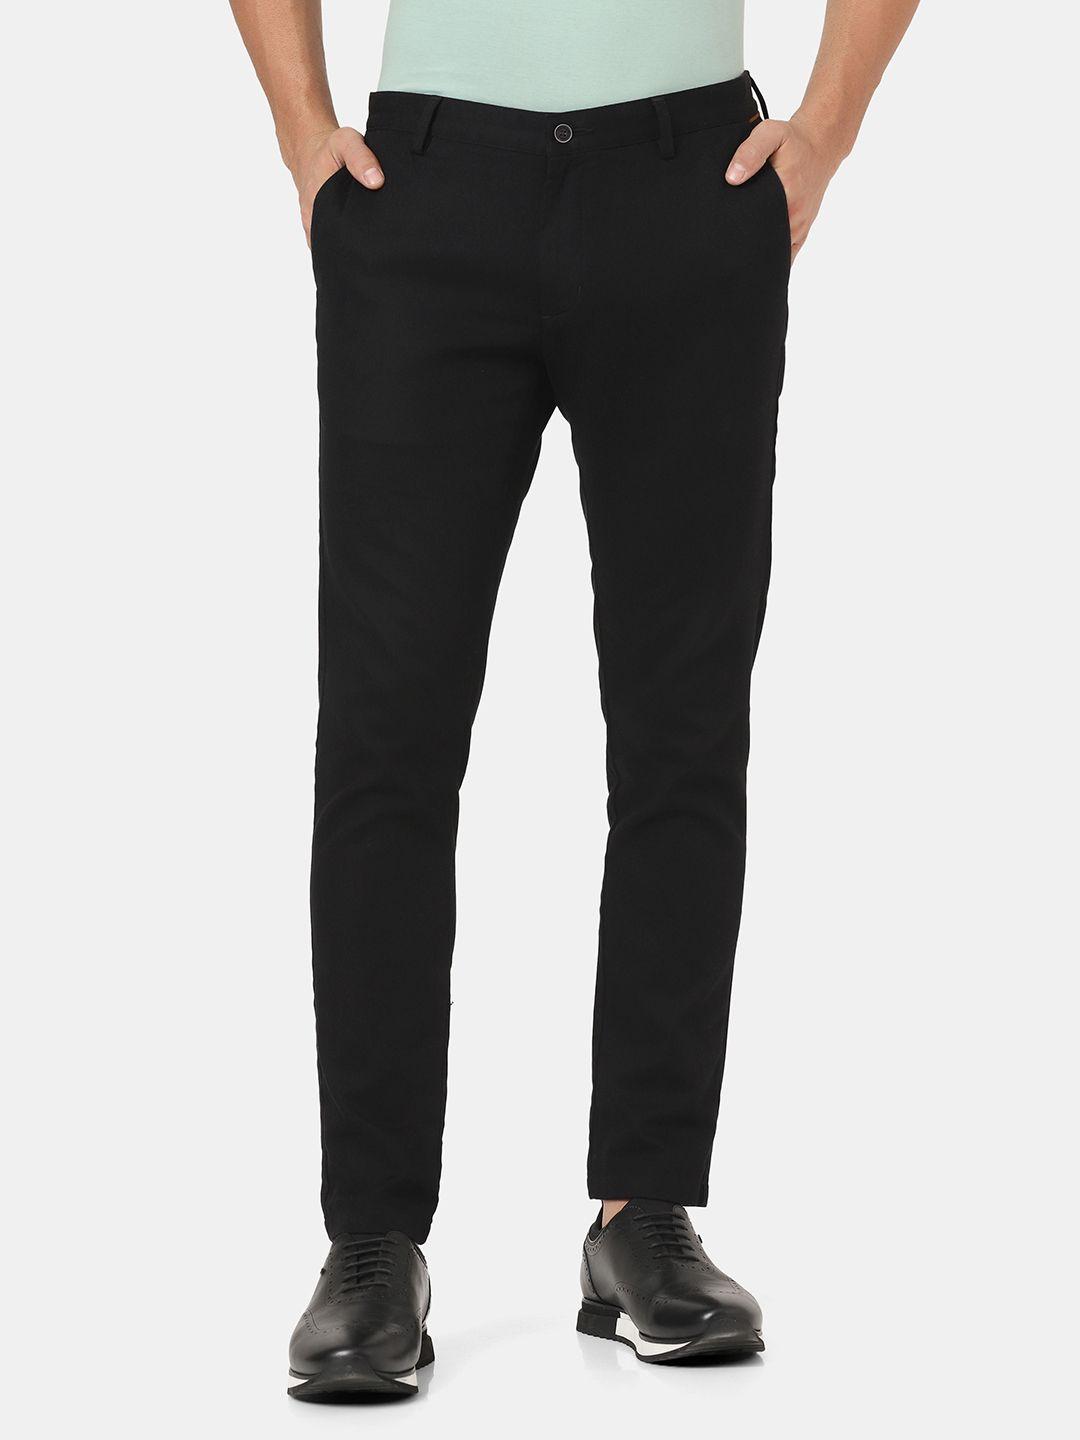 blackberrys-men-skinny-fit-low-rise-trouser